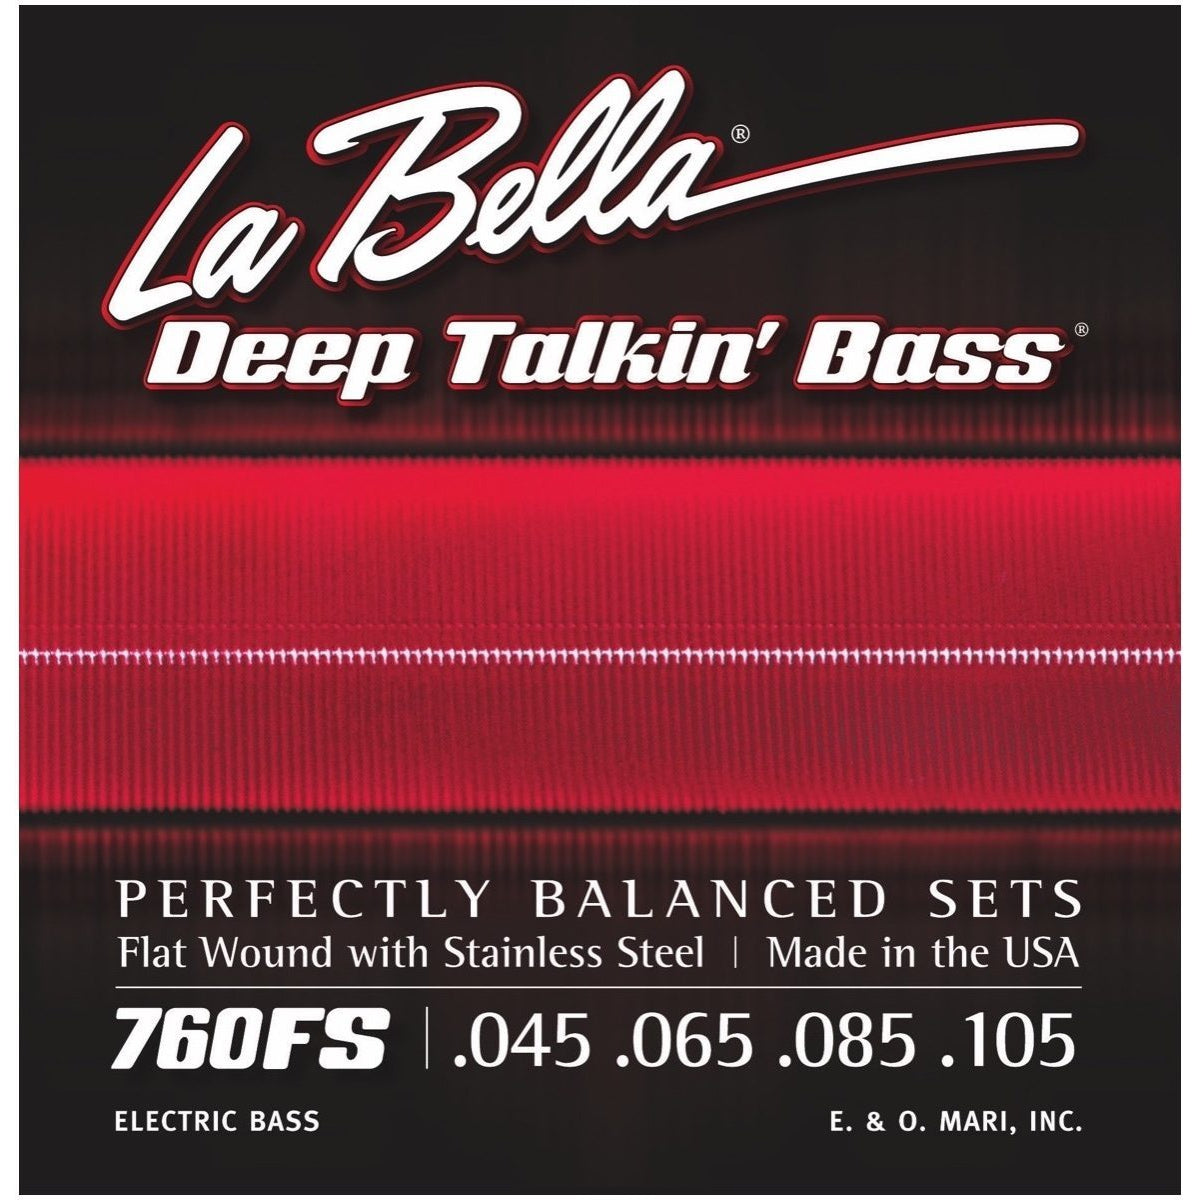 La Bella Deep Talkin Flatwound Stainless Steel Electric Bass Strings, 760FS, 45-105, Standard